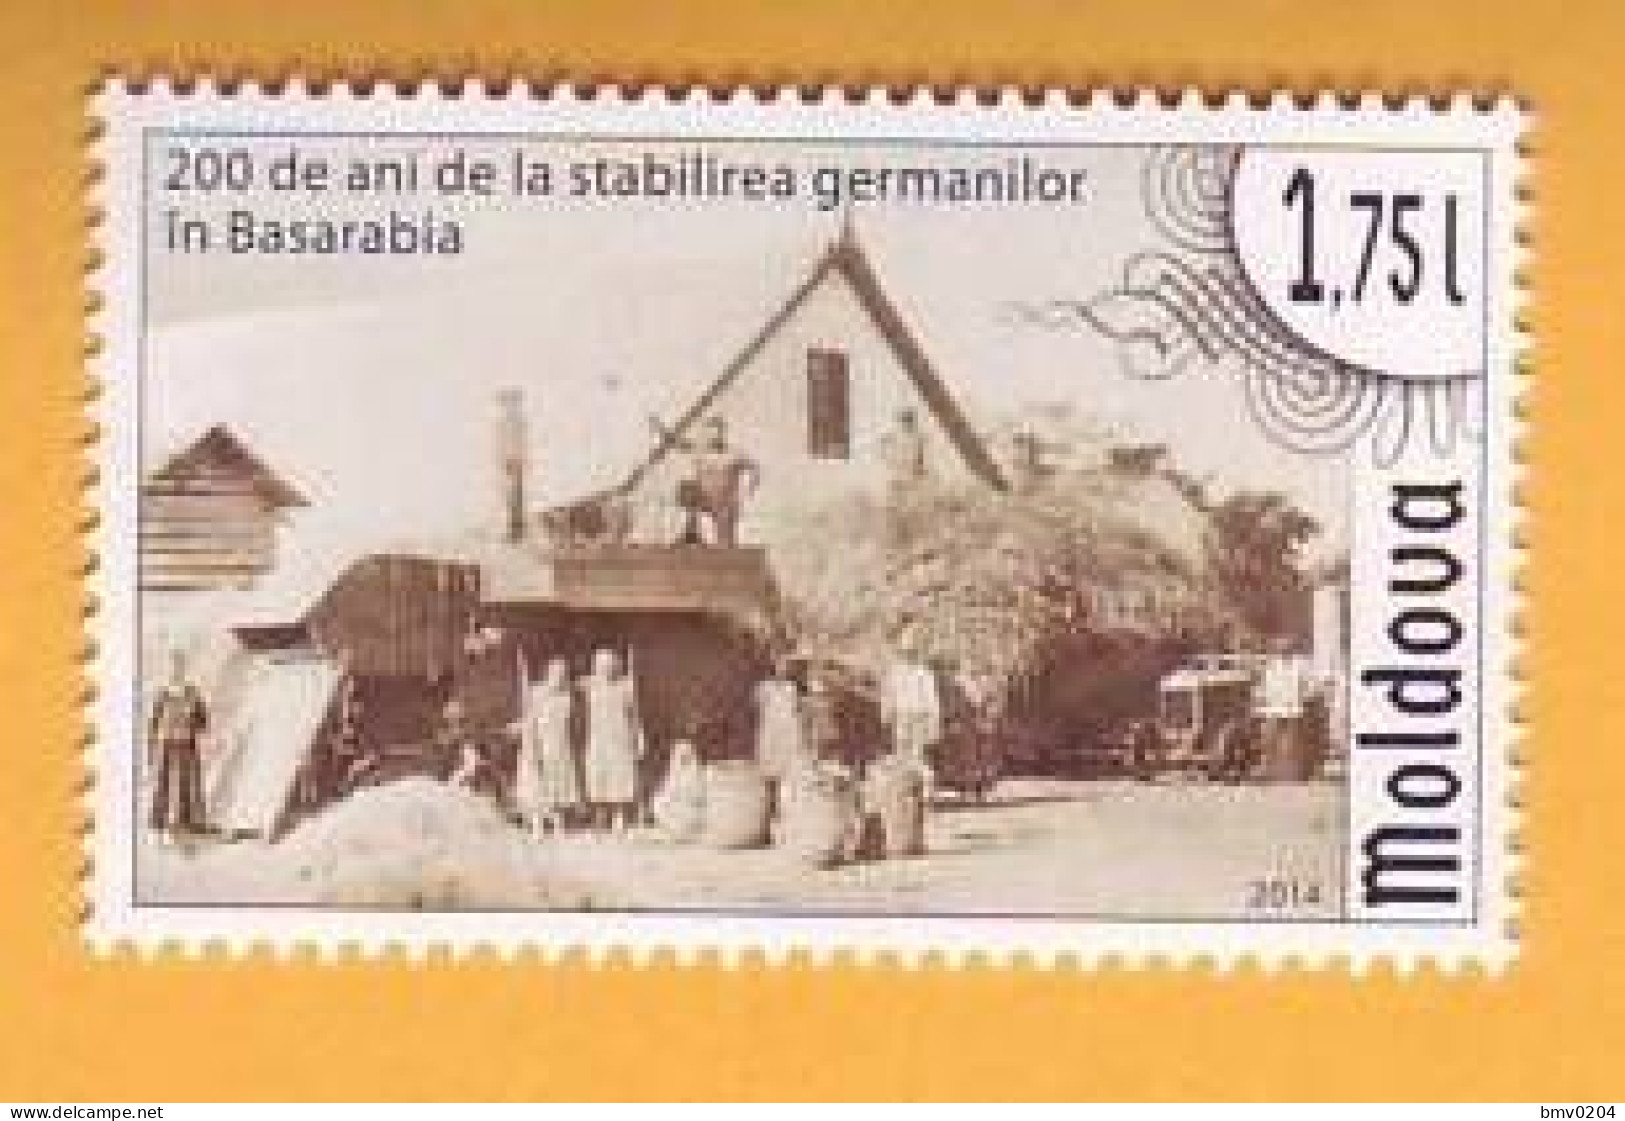 2014 Moldova Moldavie  Moldau  200 Years Of Germans In Bessarabia. Germany 1v Mint - Moldavia